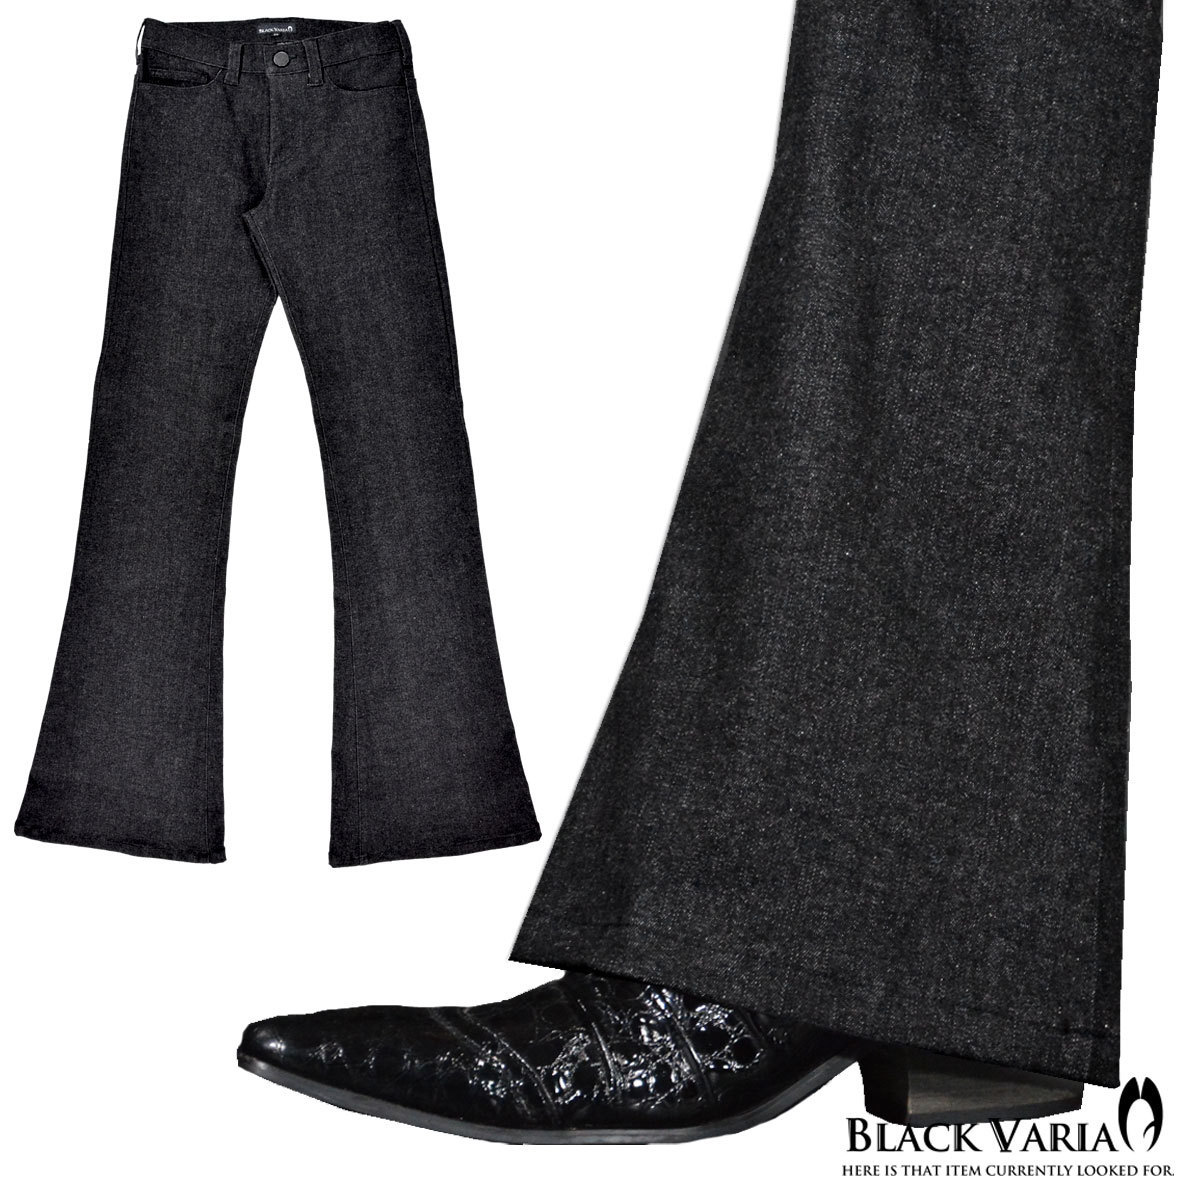 0#162252-bk ブラックバリア ベルボトム ブーツカット ジーパン 裾広 デニム パンツ メンズ (ブラック黒) 3L33 日本製 無地 ジーンズ 舞台